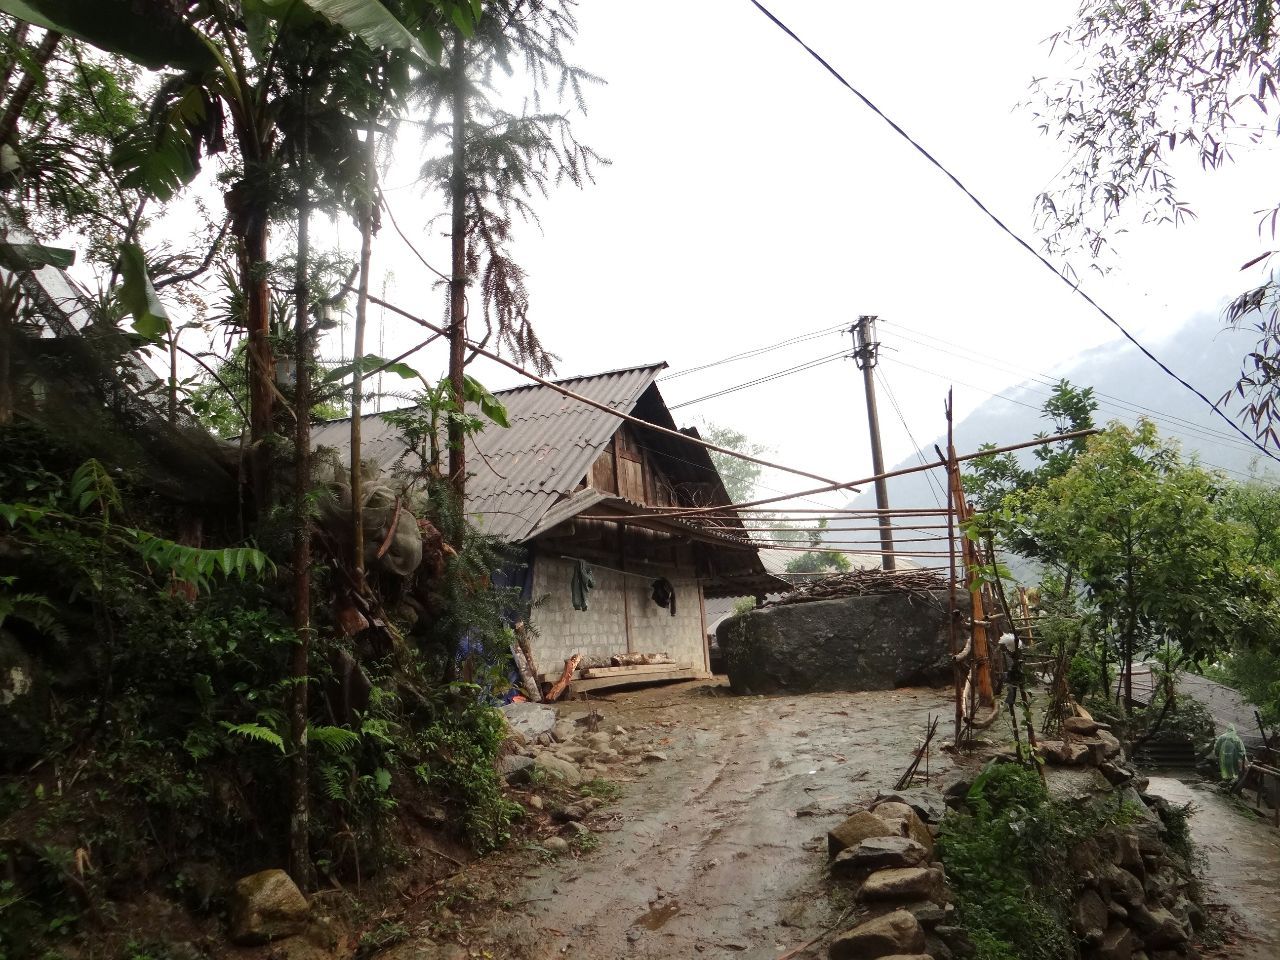 У одного из домов еще один мегалит. - Фотоотчет Вьетнам 2019. Часть 3.